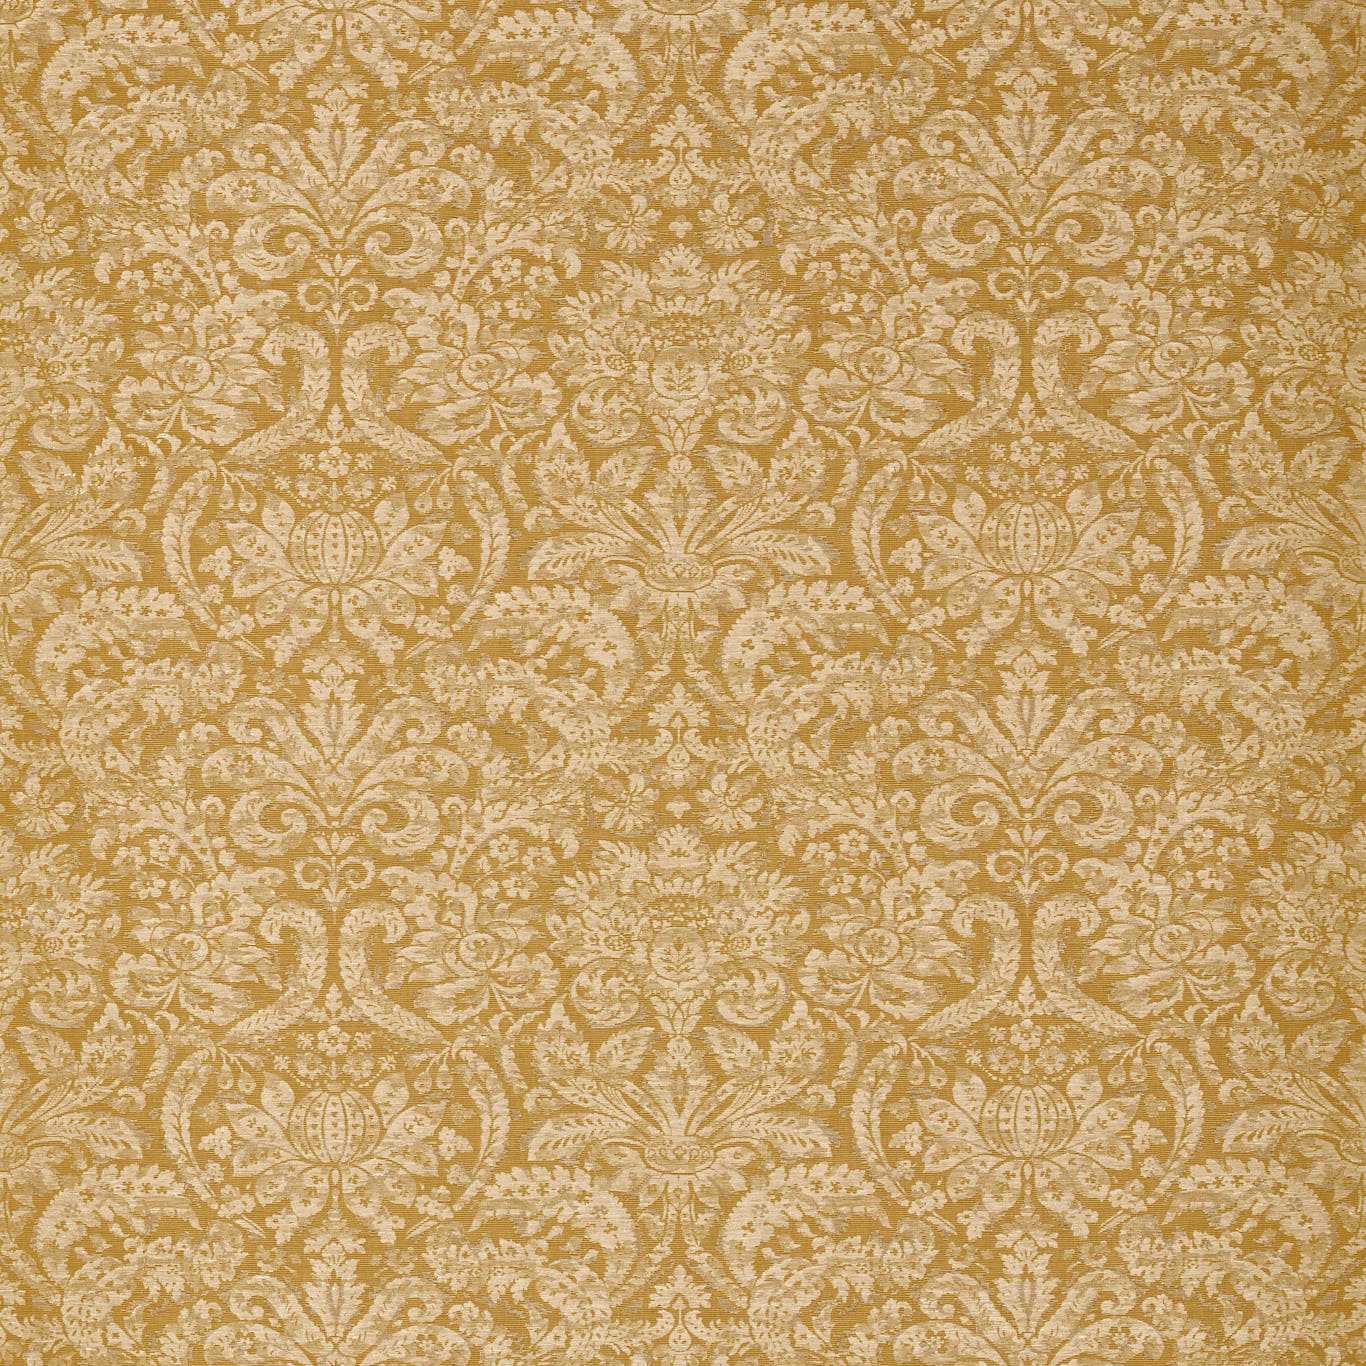 Knole Damask Gold Fabric by ZOF